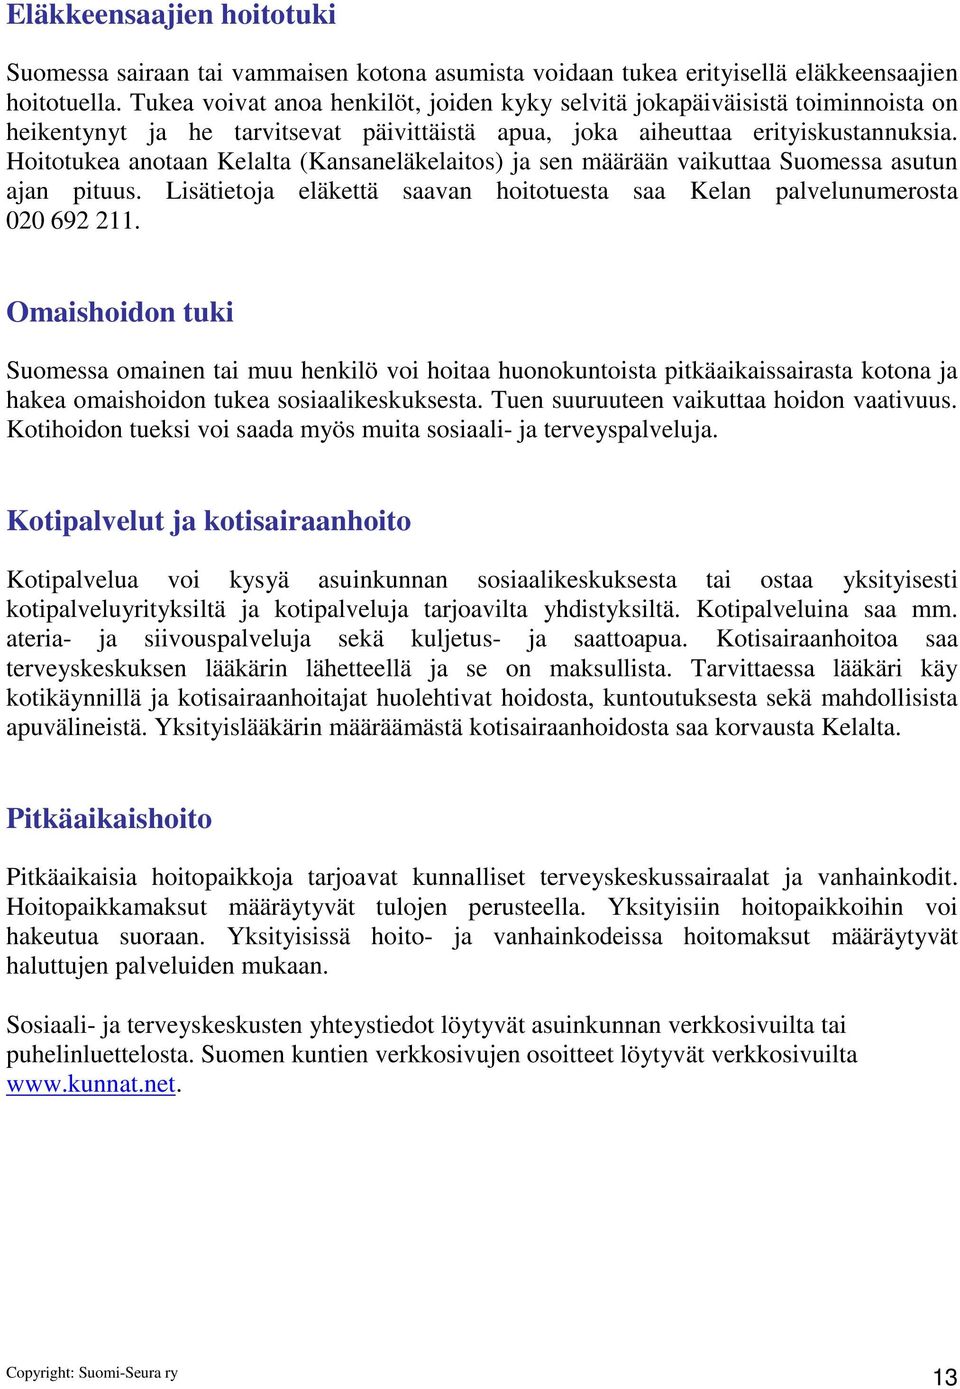 Hoitotukea anotaan Kelalta (Kansaneläkelaitos) ja sen määrään vaikuttaa Suomessa asutun ajan pituus. Lisätietoja eläkettä saavan hoitotuesta saa Kelan palvelunumerosta 020 692 211.